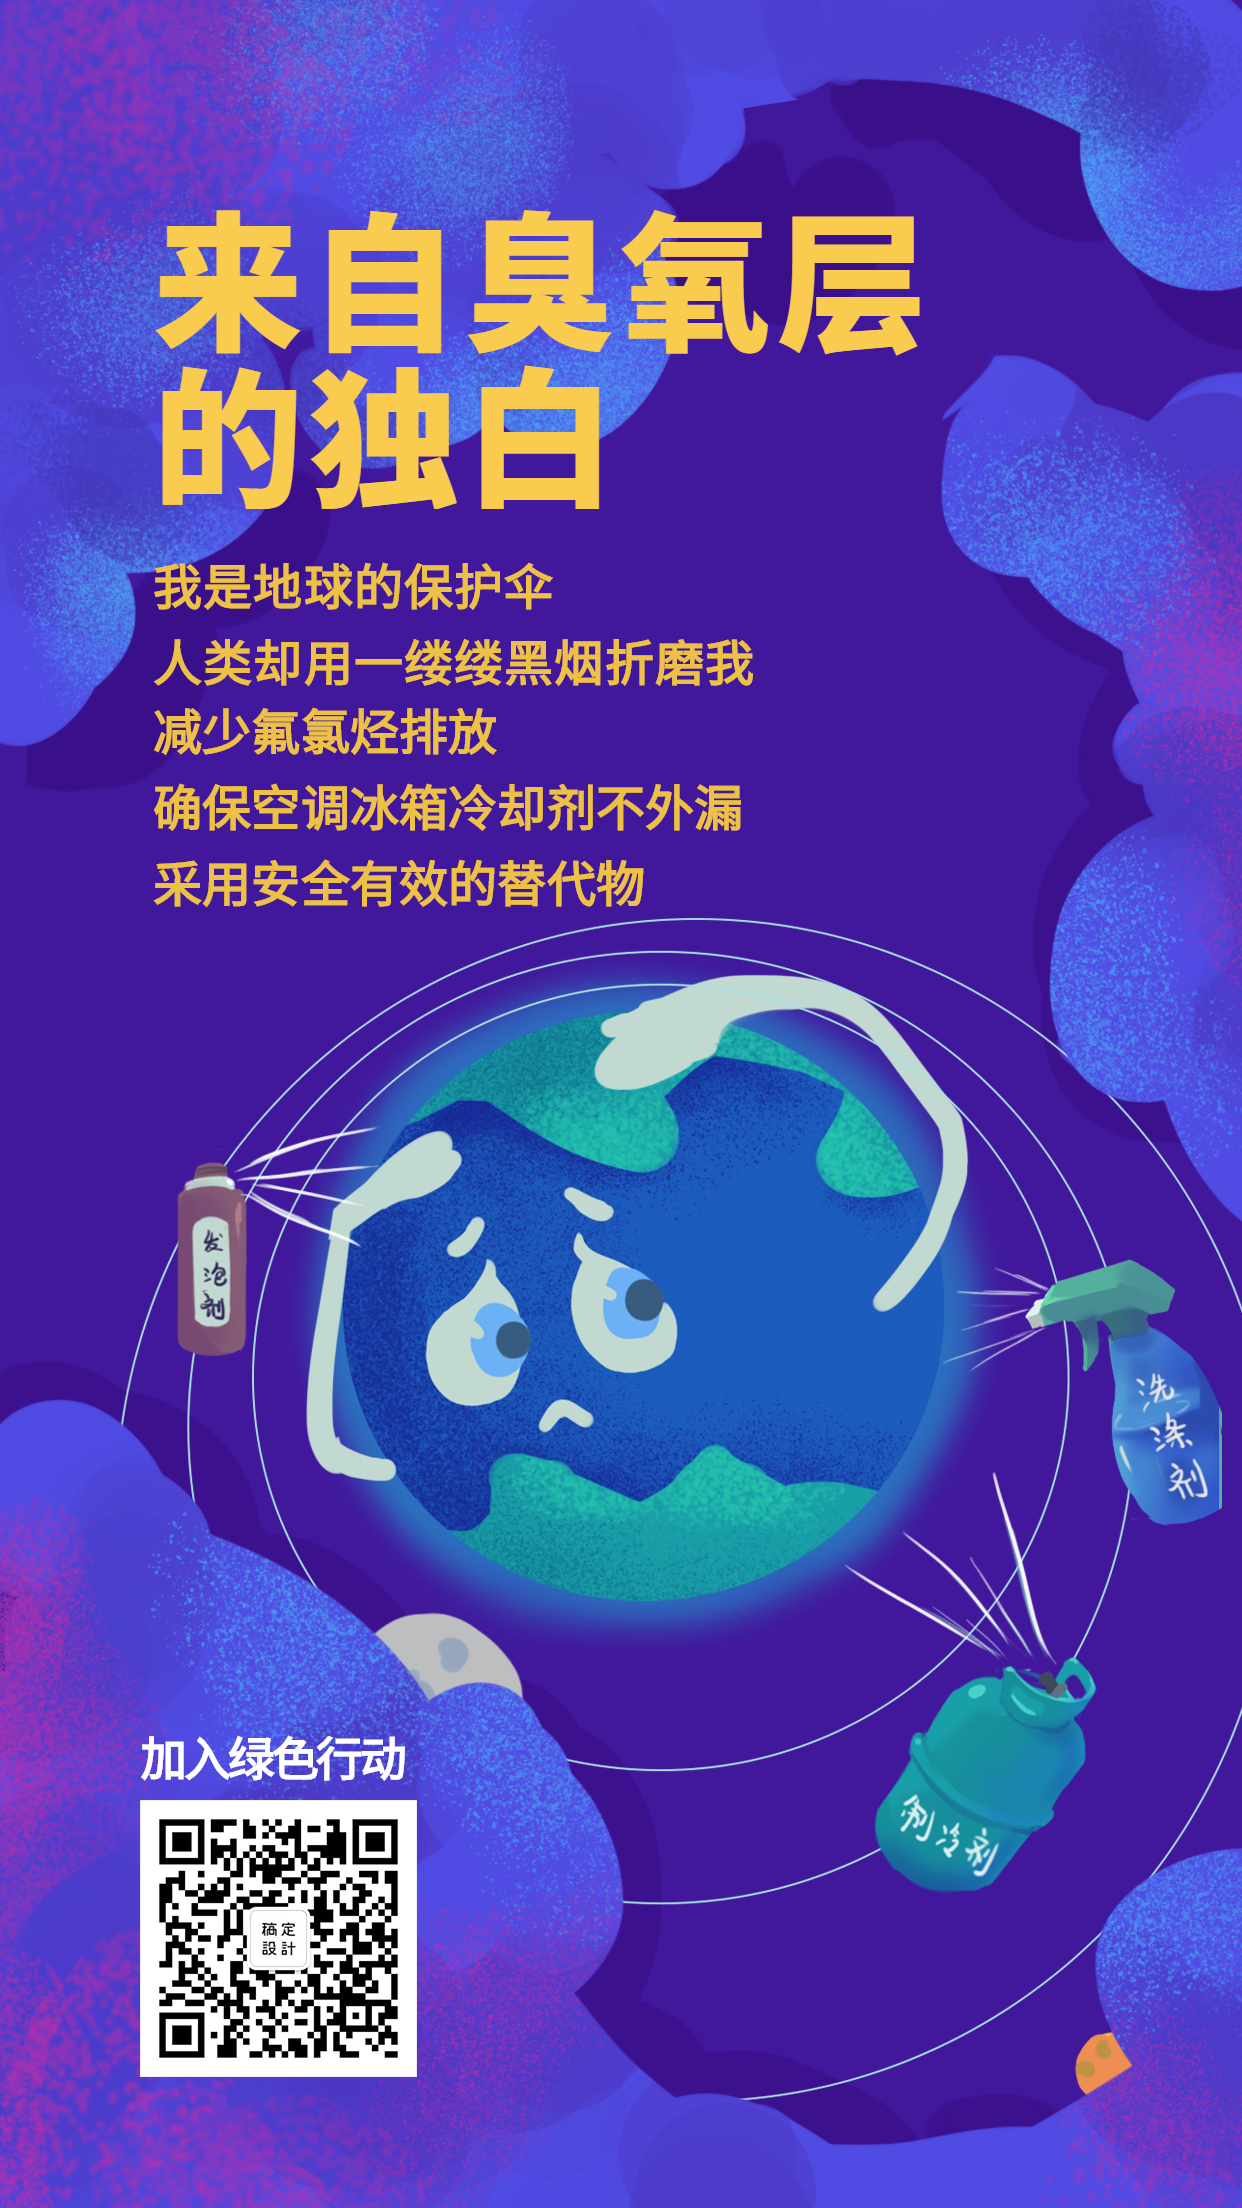 916国际臭氧层保护日手绘地球手机海报预览效果